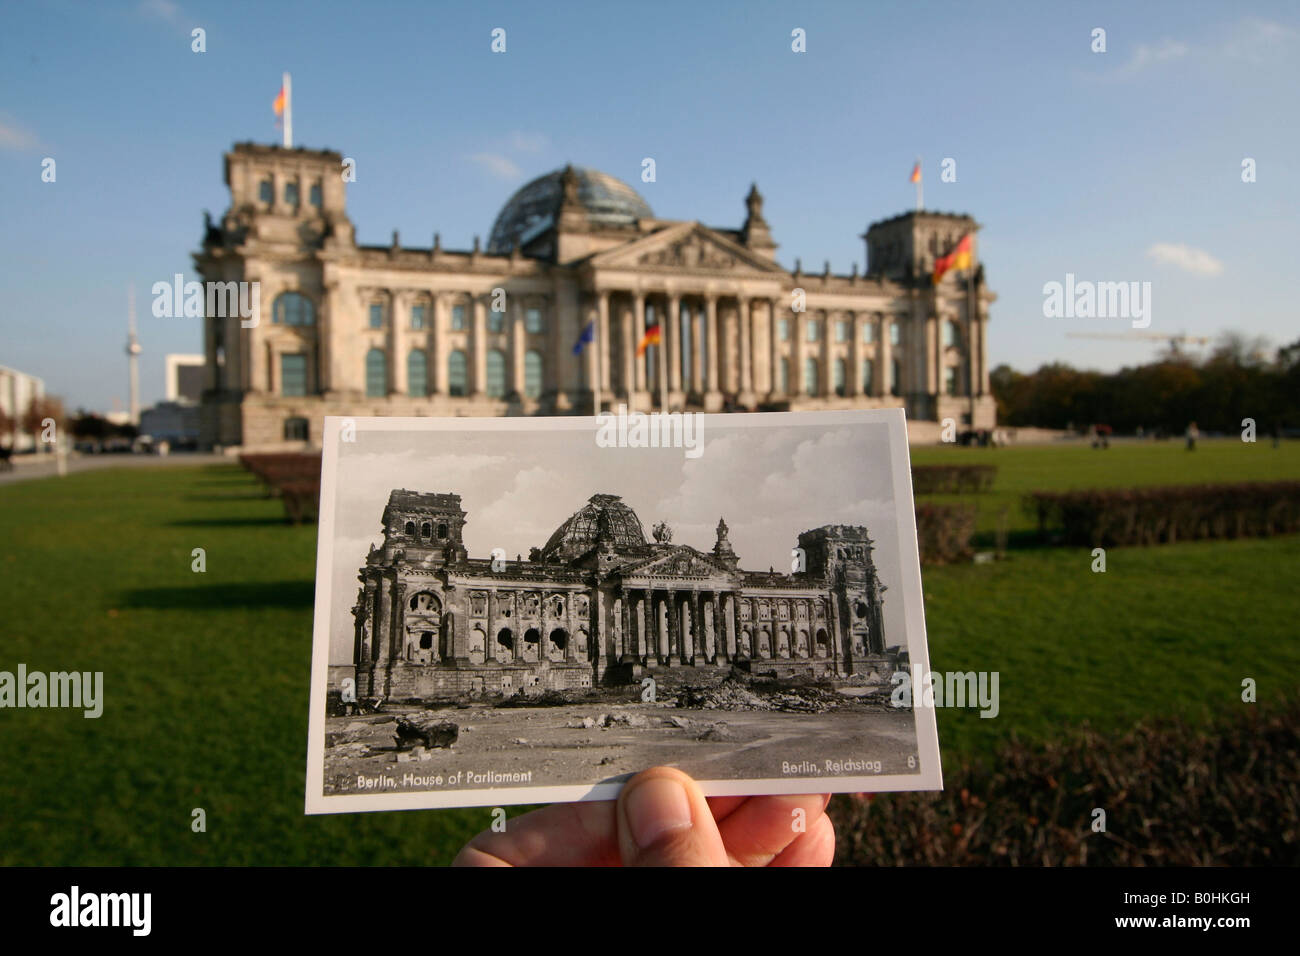 Damals wie heute hand hält ein altes schwarz-weiß Foto des Reichstags oder Deutsch Houses of Parliament mit dem WWII Bombe d Stockfoto